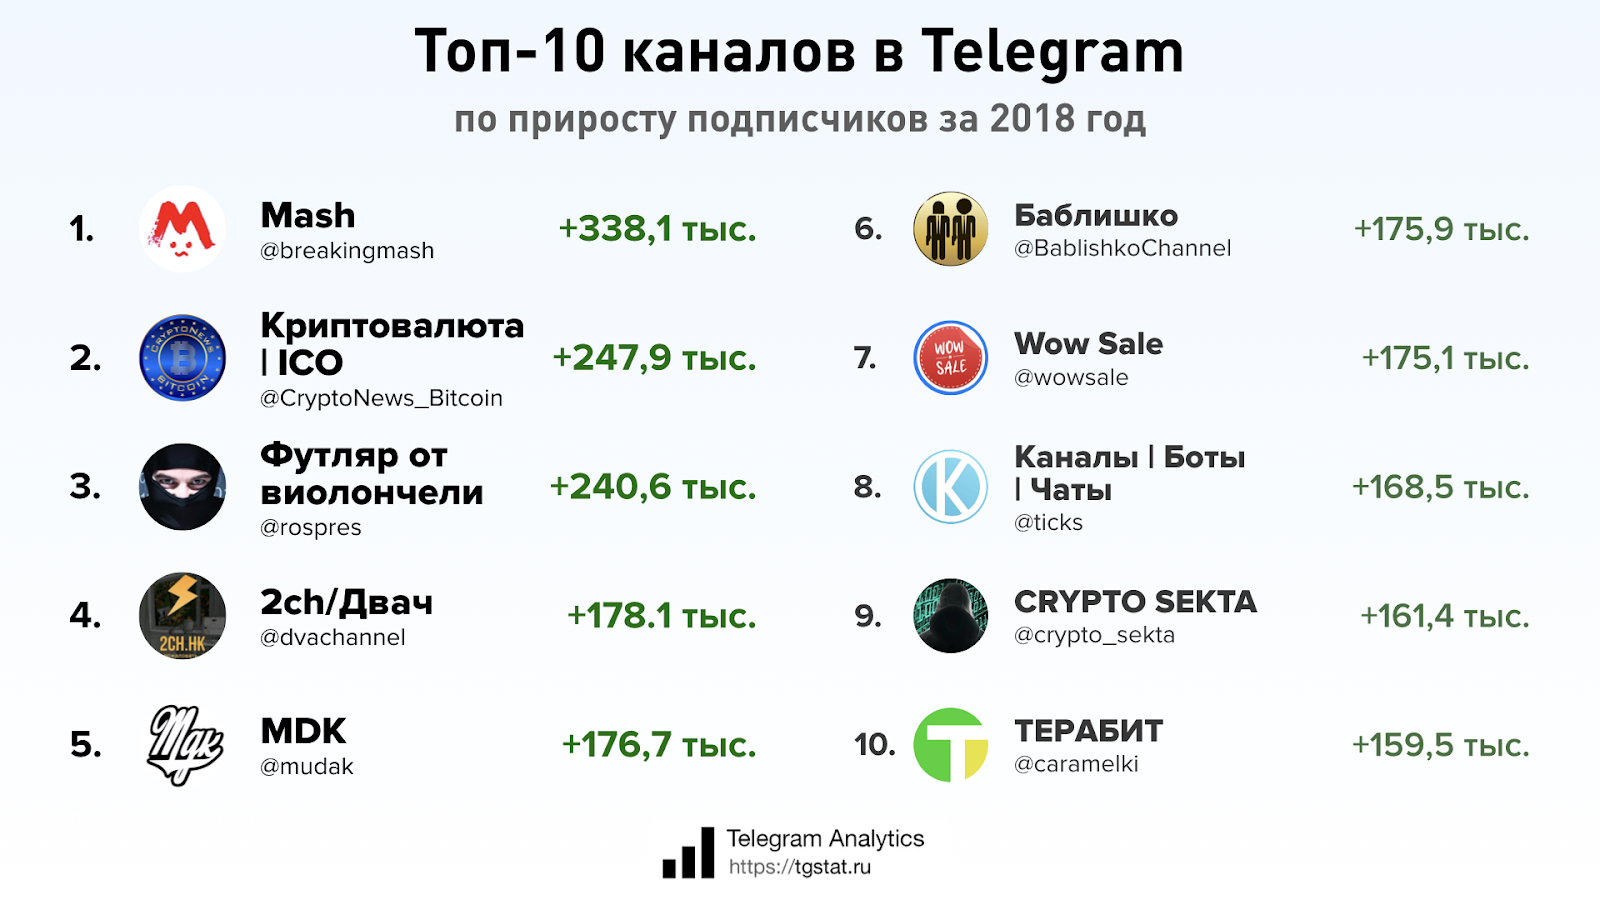 Телеграмм канал кб. Топ телеграм каналов. Самый популярный тг канал. Российские каналы в телеграмме. Кому принадлежит телеграм.